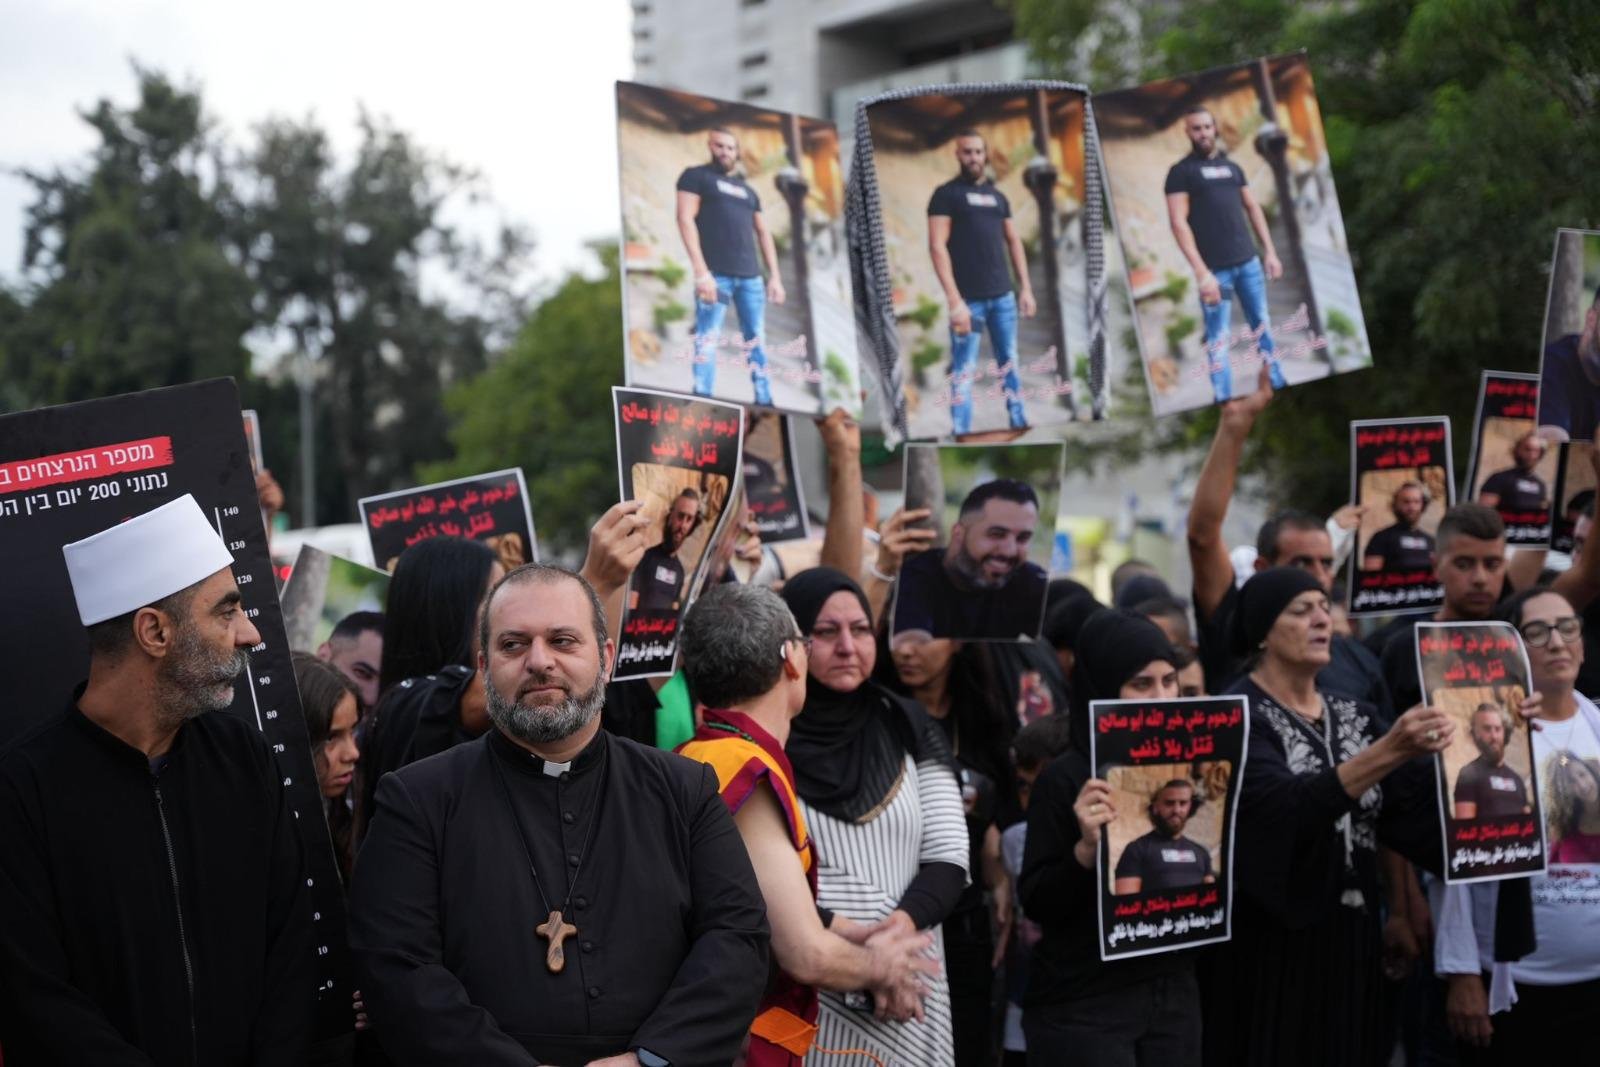 حيفا: اختتام "مسيرة الأموات"- حضور مهيب رافض للعنف والجريمة!-26